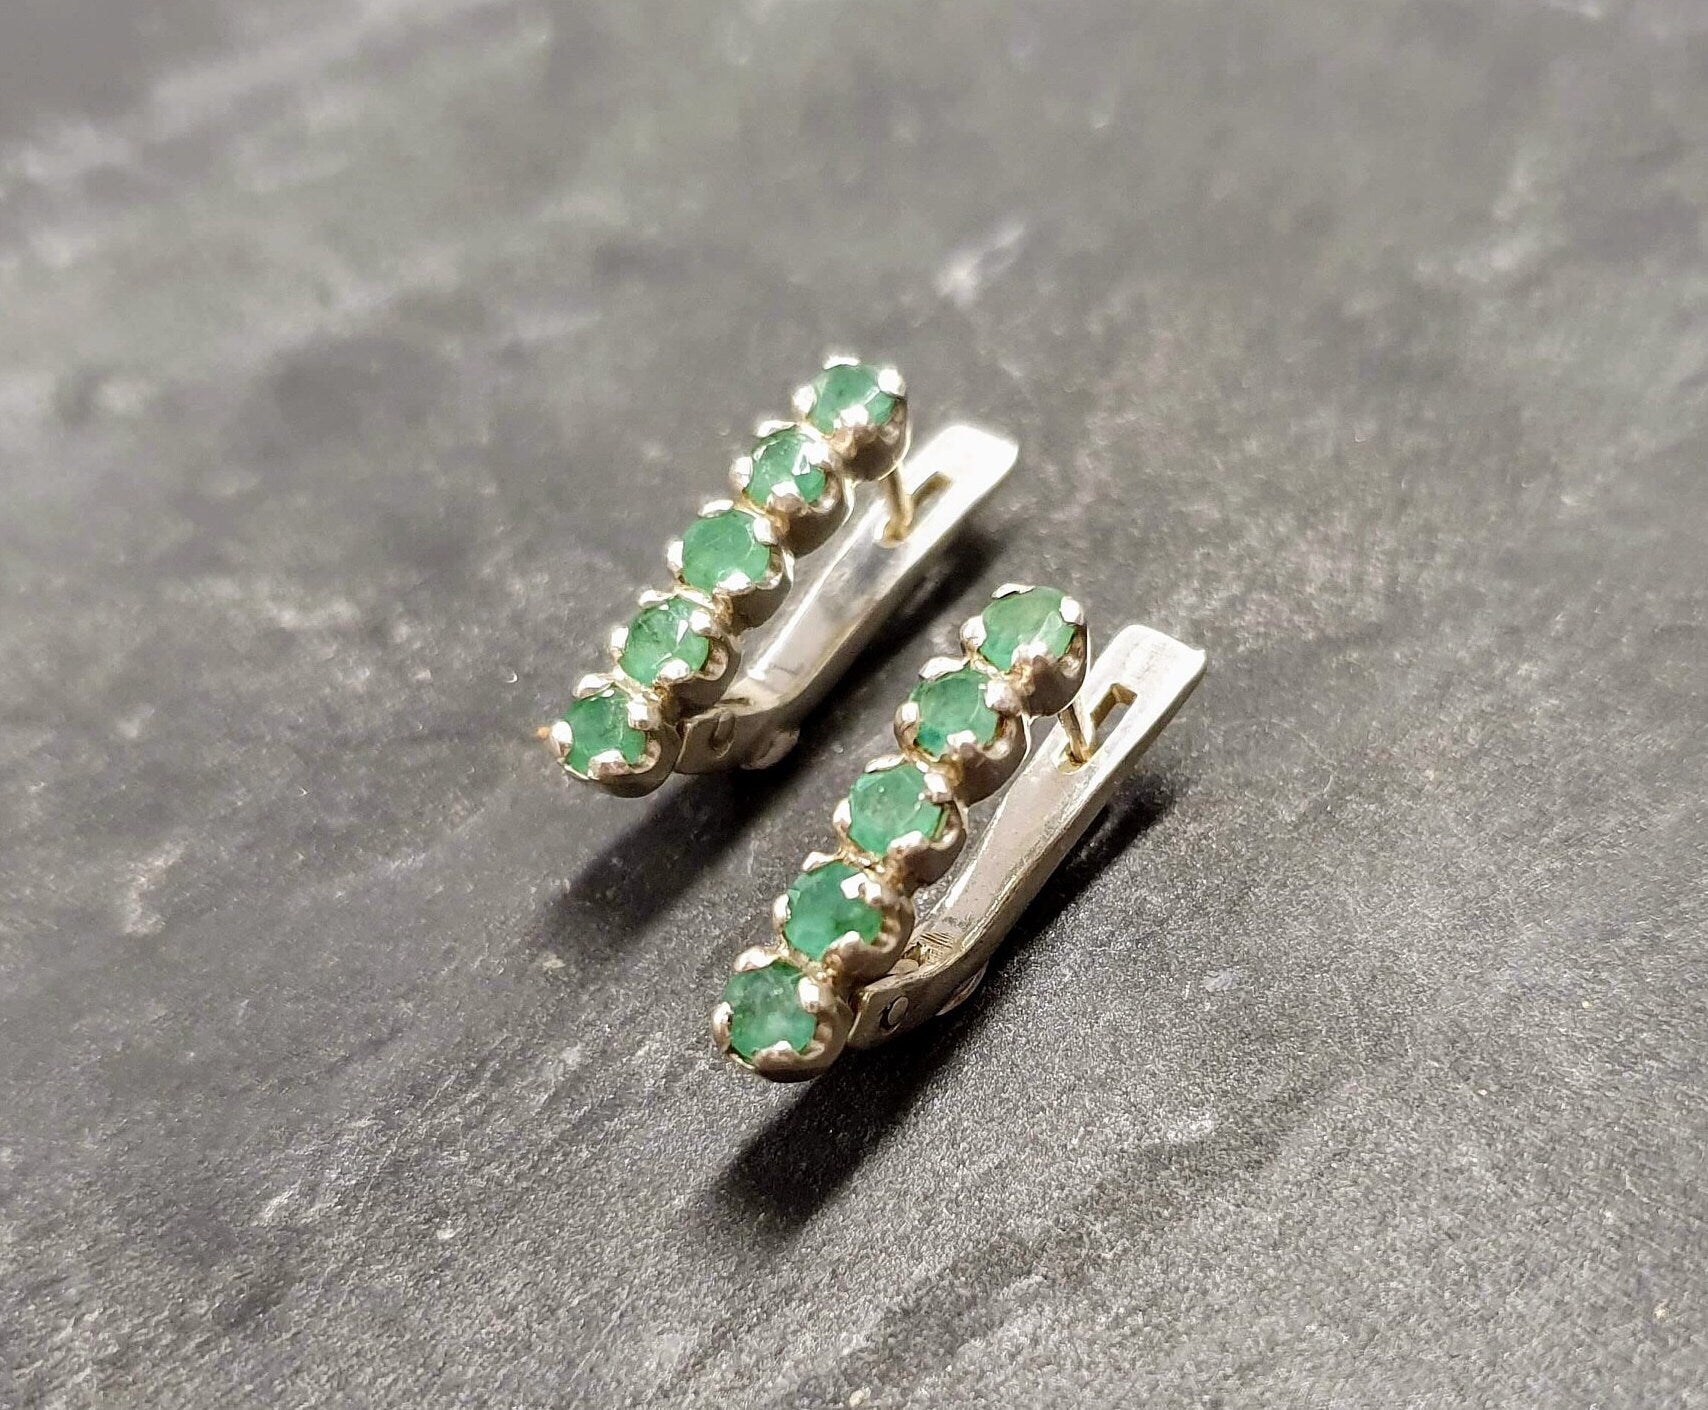 Emerald Earrings, Natural Emerald, Green Vintage Studs, May Birthstone, Vintage Earrings, Dainty Earrings, Line Studs, Solid Silver Earrings